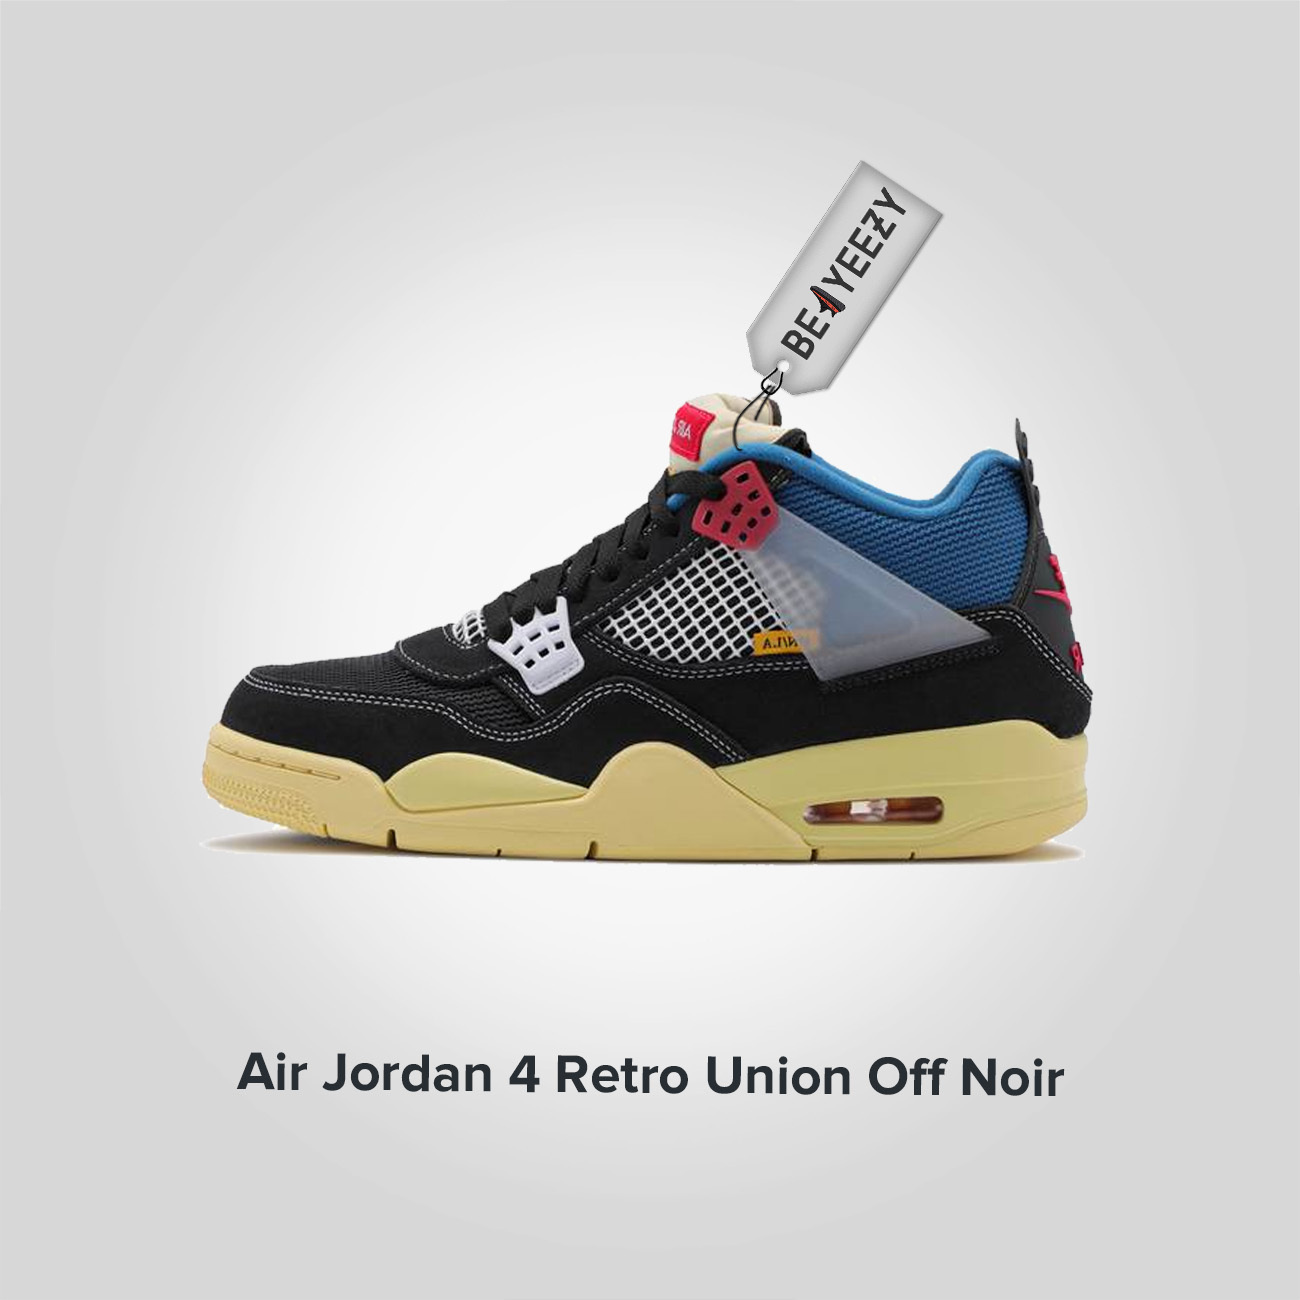 Jordan 4 Retro Union Off Noir